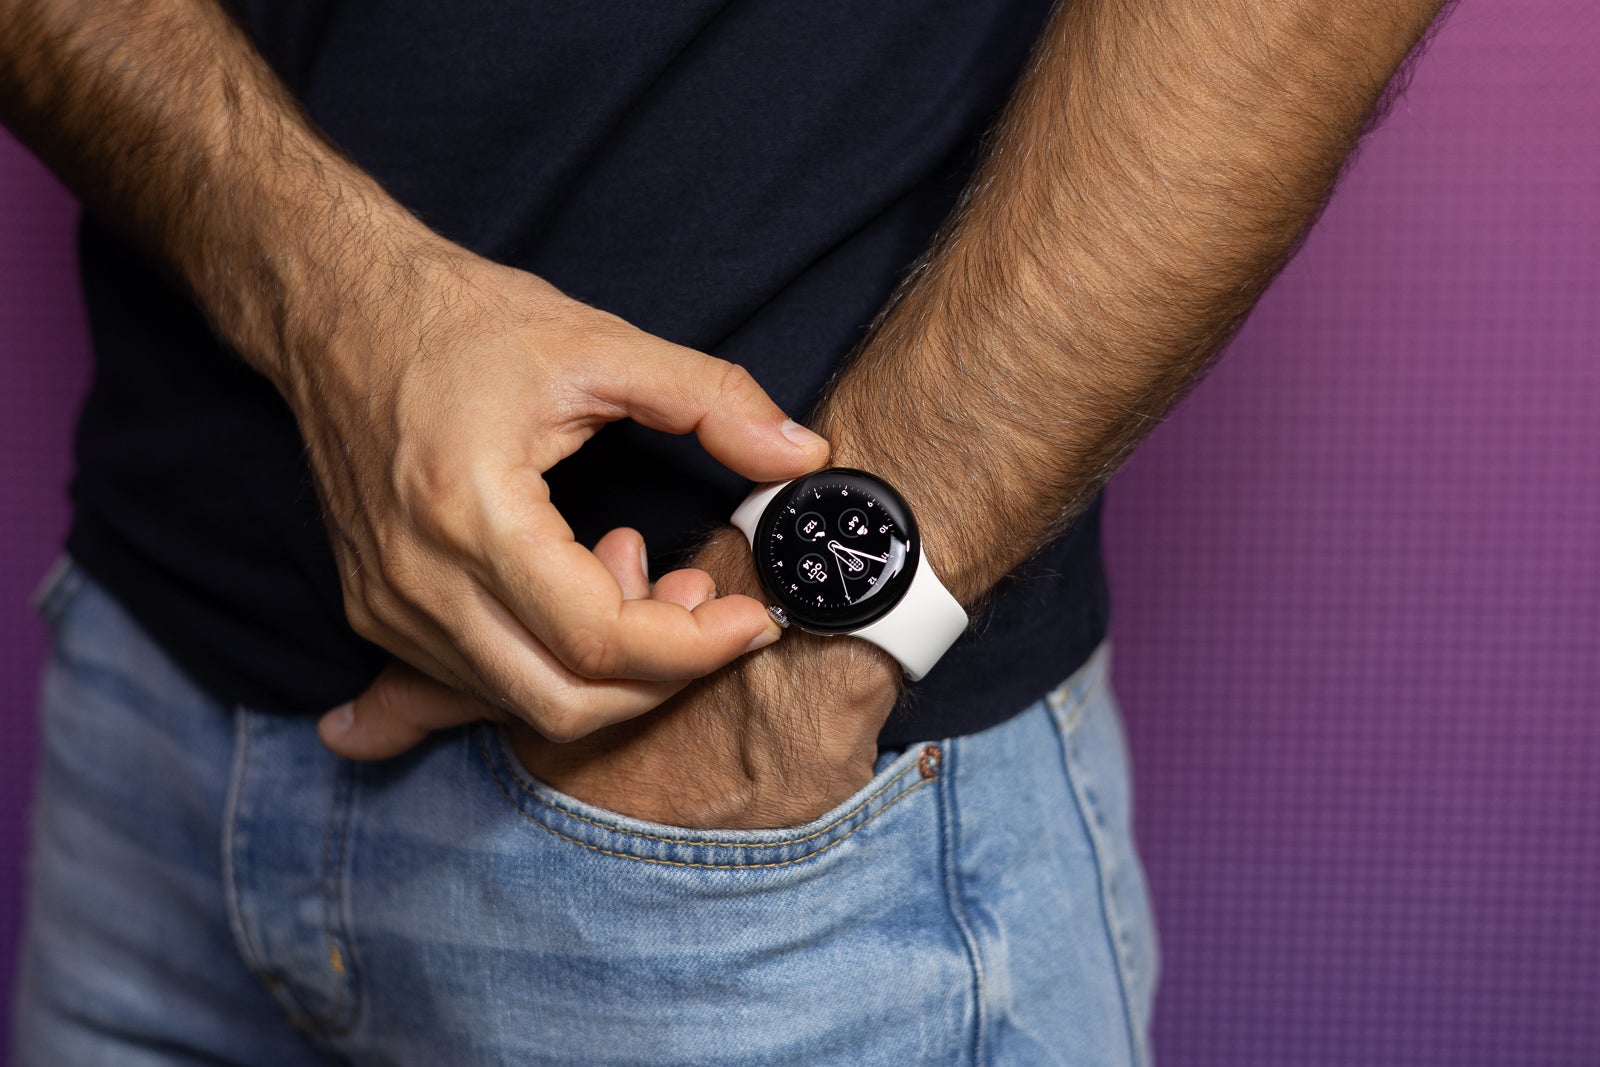 Les montres intelligentes modernes sont sûrement élégantes - (Crédit image - PhoneArena) - Les montres intelligentes rondes sont-elles terriblement peu pratiques ?  Pourquoi l'Apple Watch rectangulaire a bien plus de sens